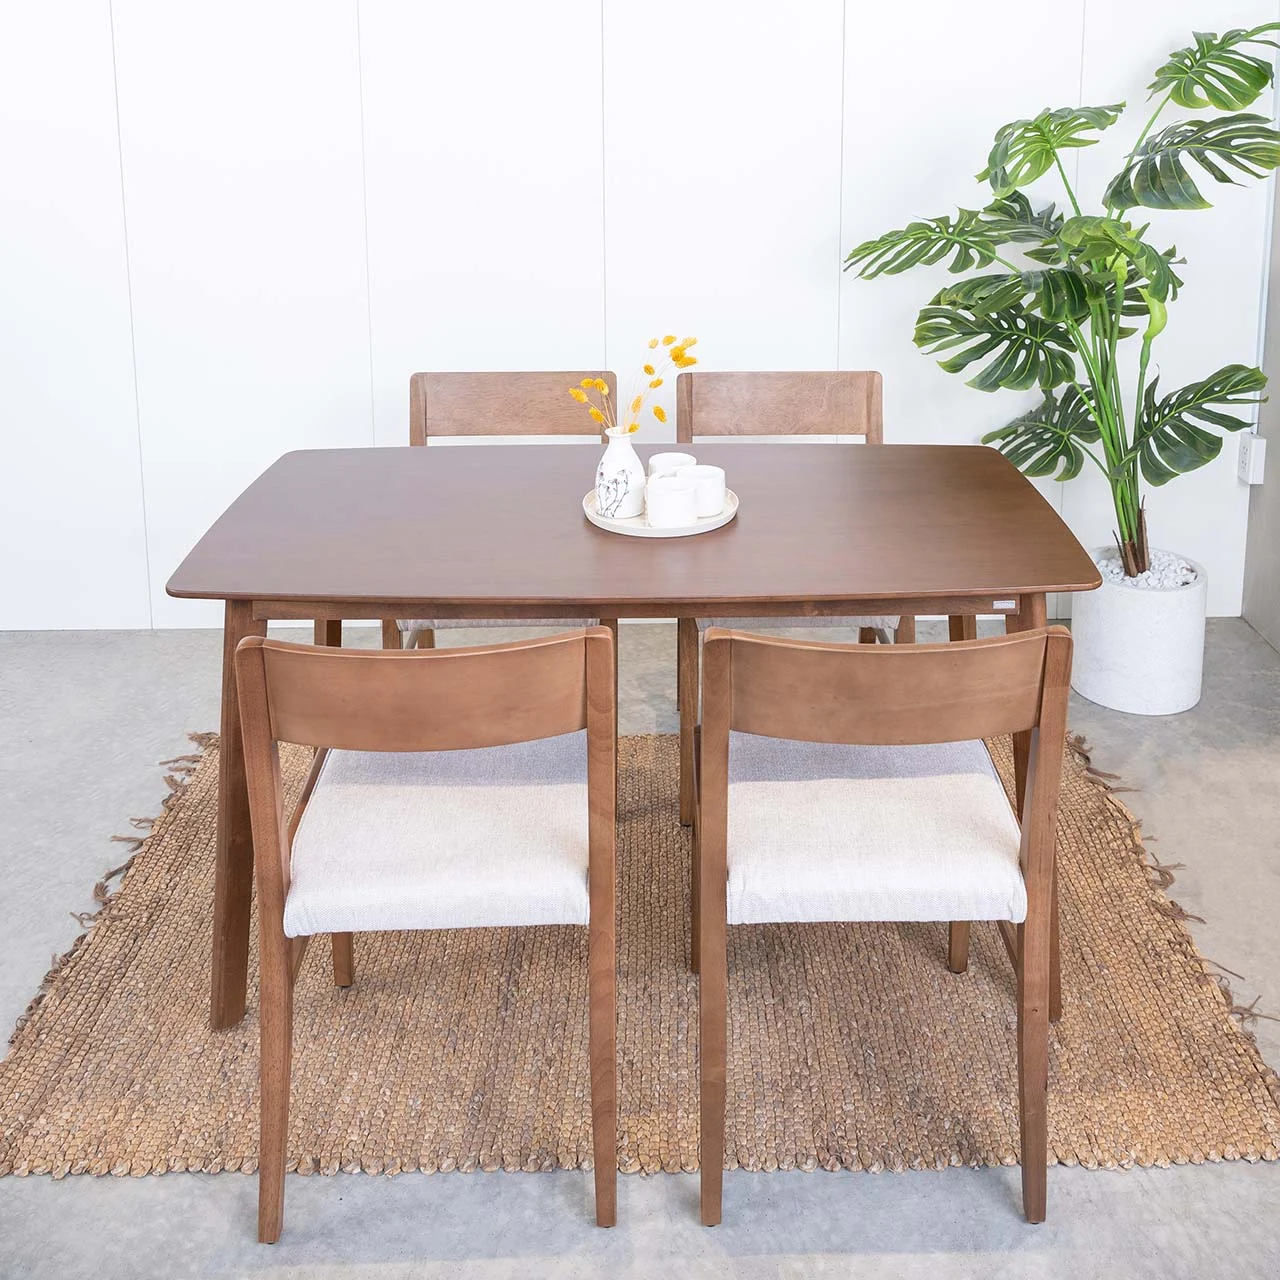 Chiêm ngưỡng mẫu bàn ăn gỗ cao su 4 ghế có thiết kế nhỏ gọn